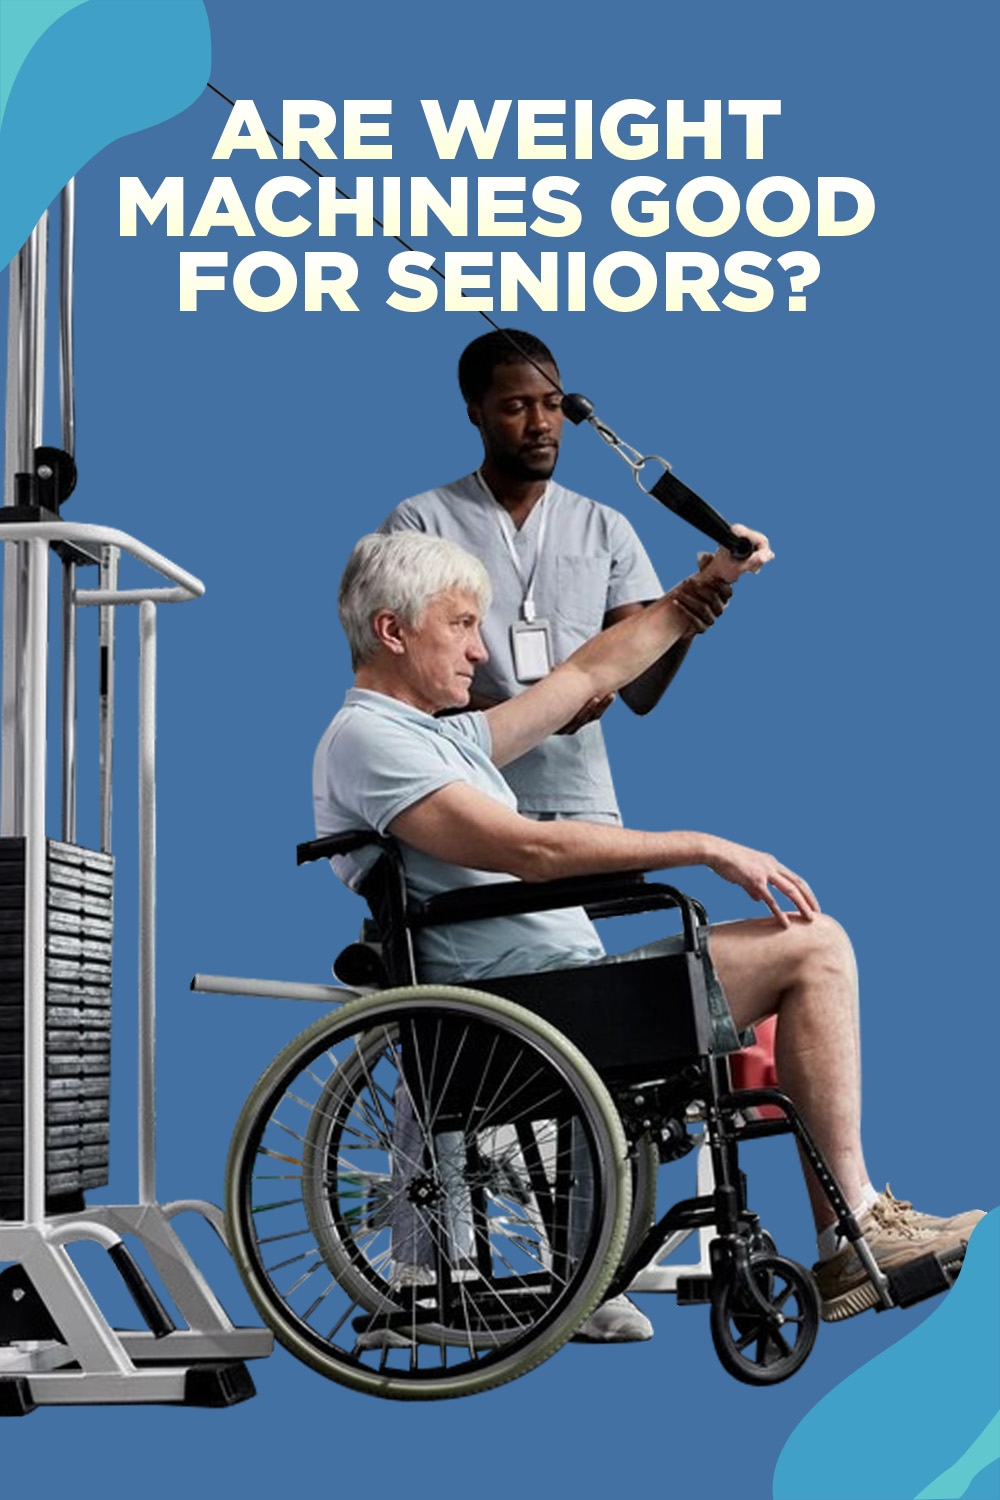 exercise equipment for the elderly